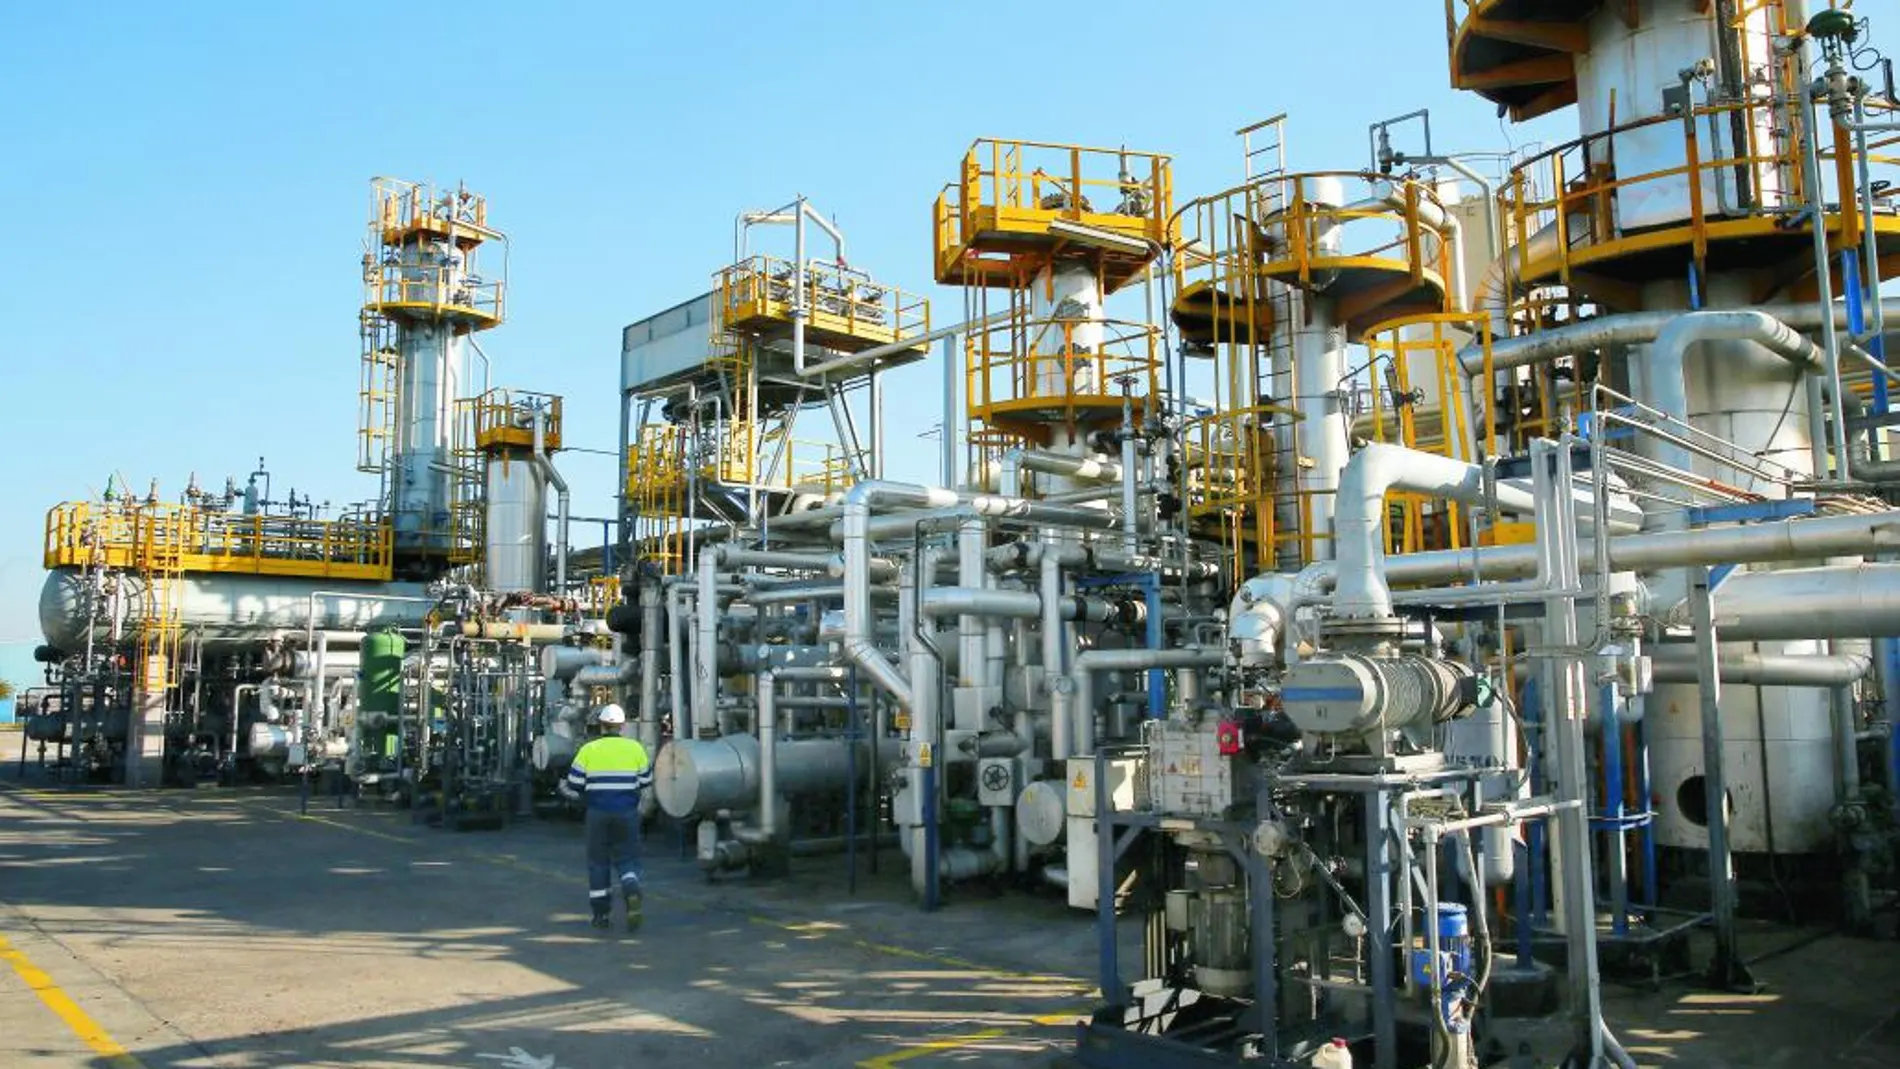 Planta de regeneración de aceite industrial usado de Sertego situada en Fuenlabrada (Madrid